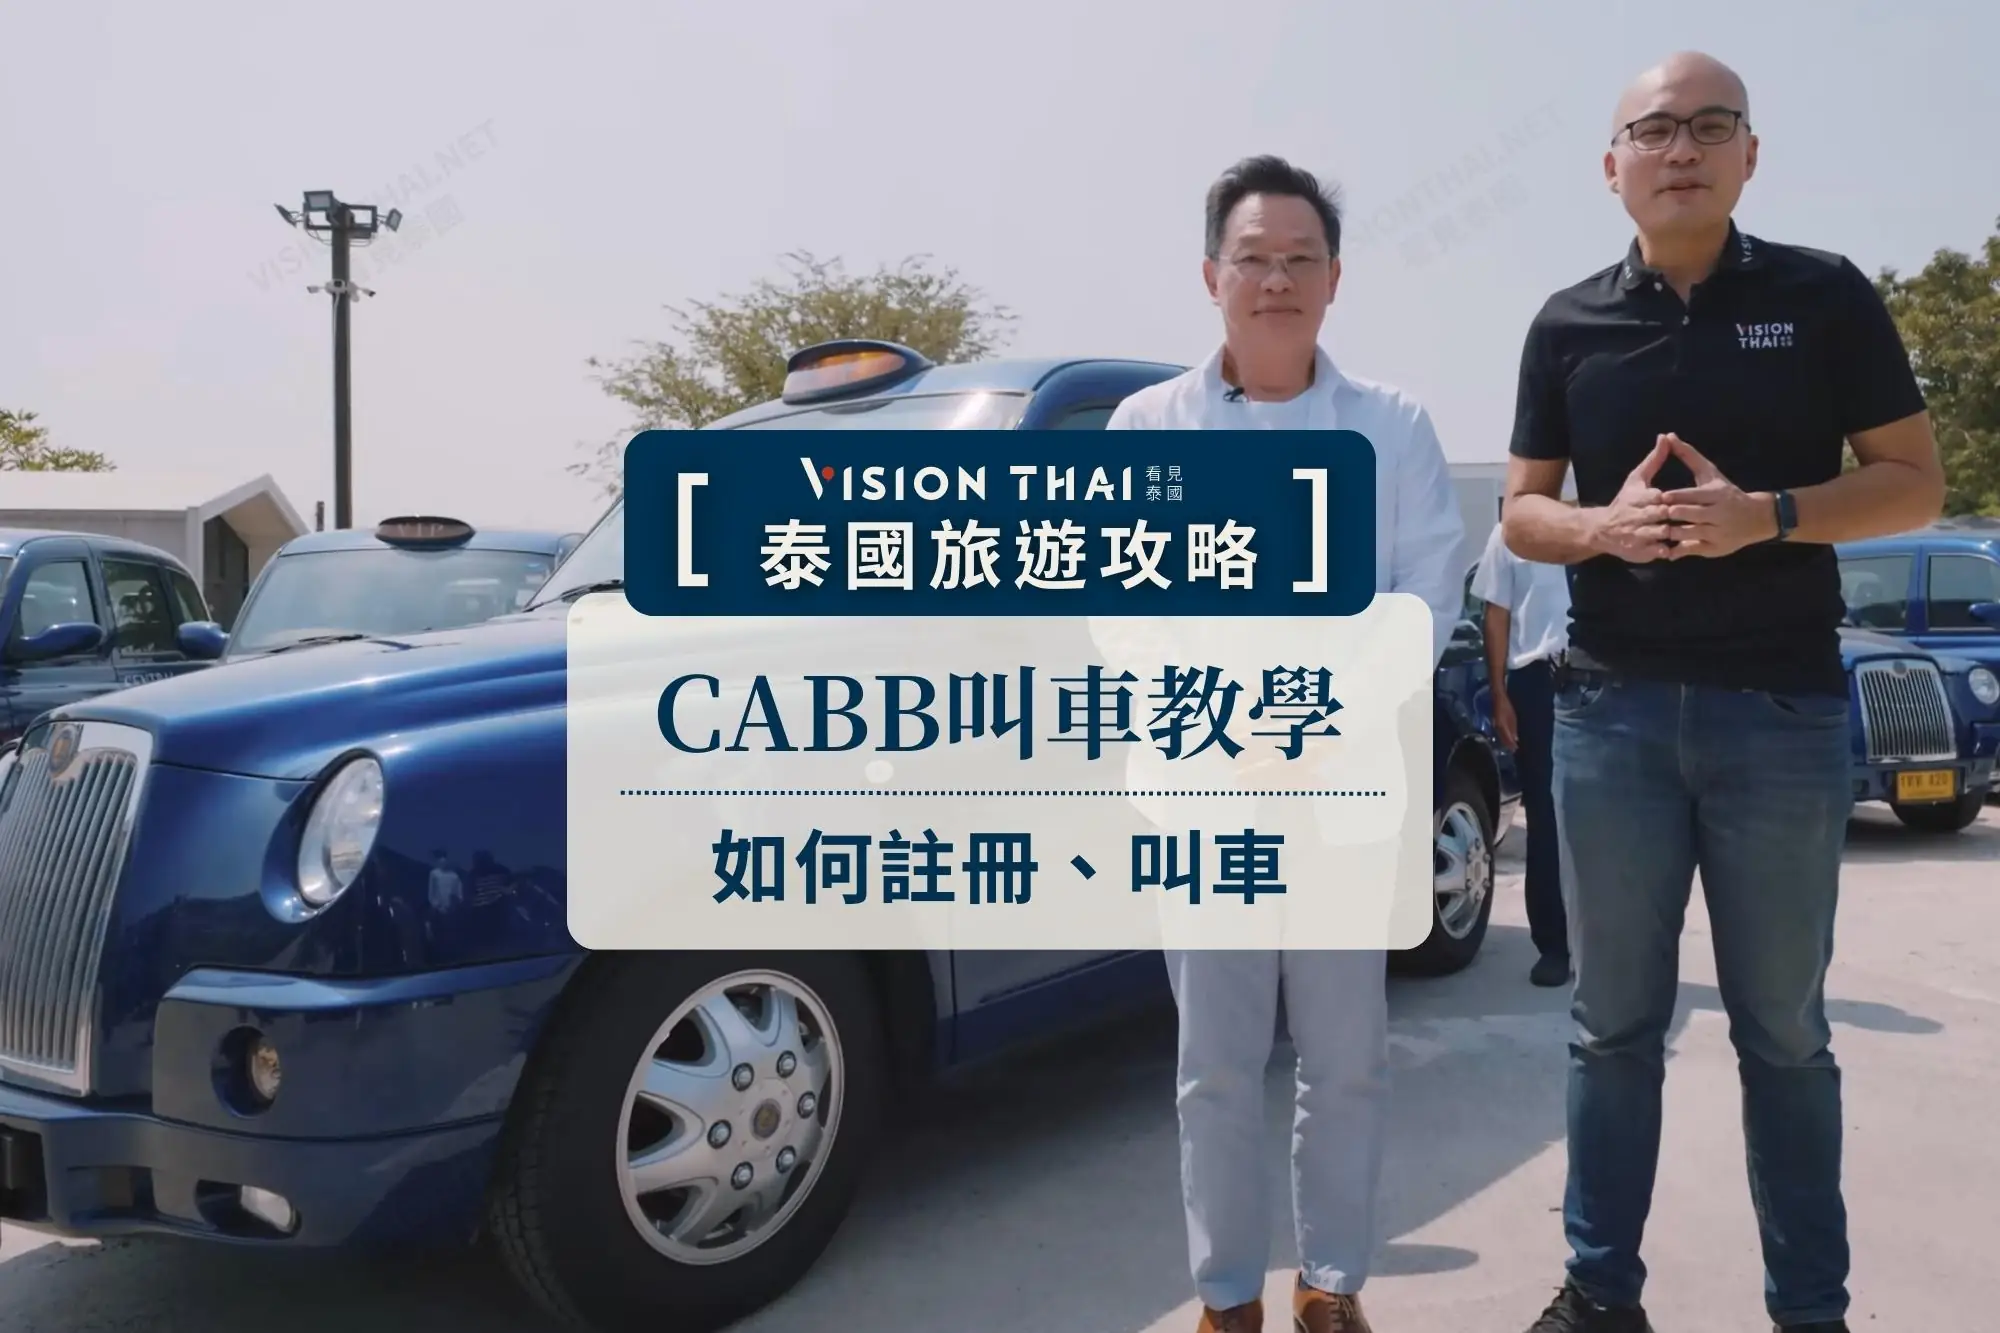 泰國叫車App CABB攻略！手把手教學：下載註冊、教學（圖片來源：看見泰國 Vision Thai）